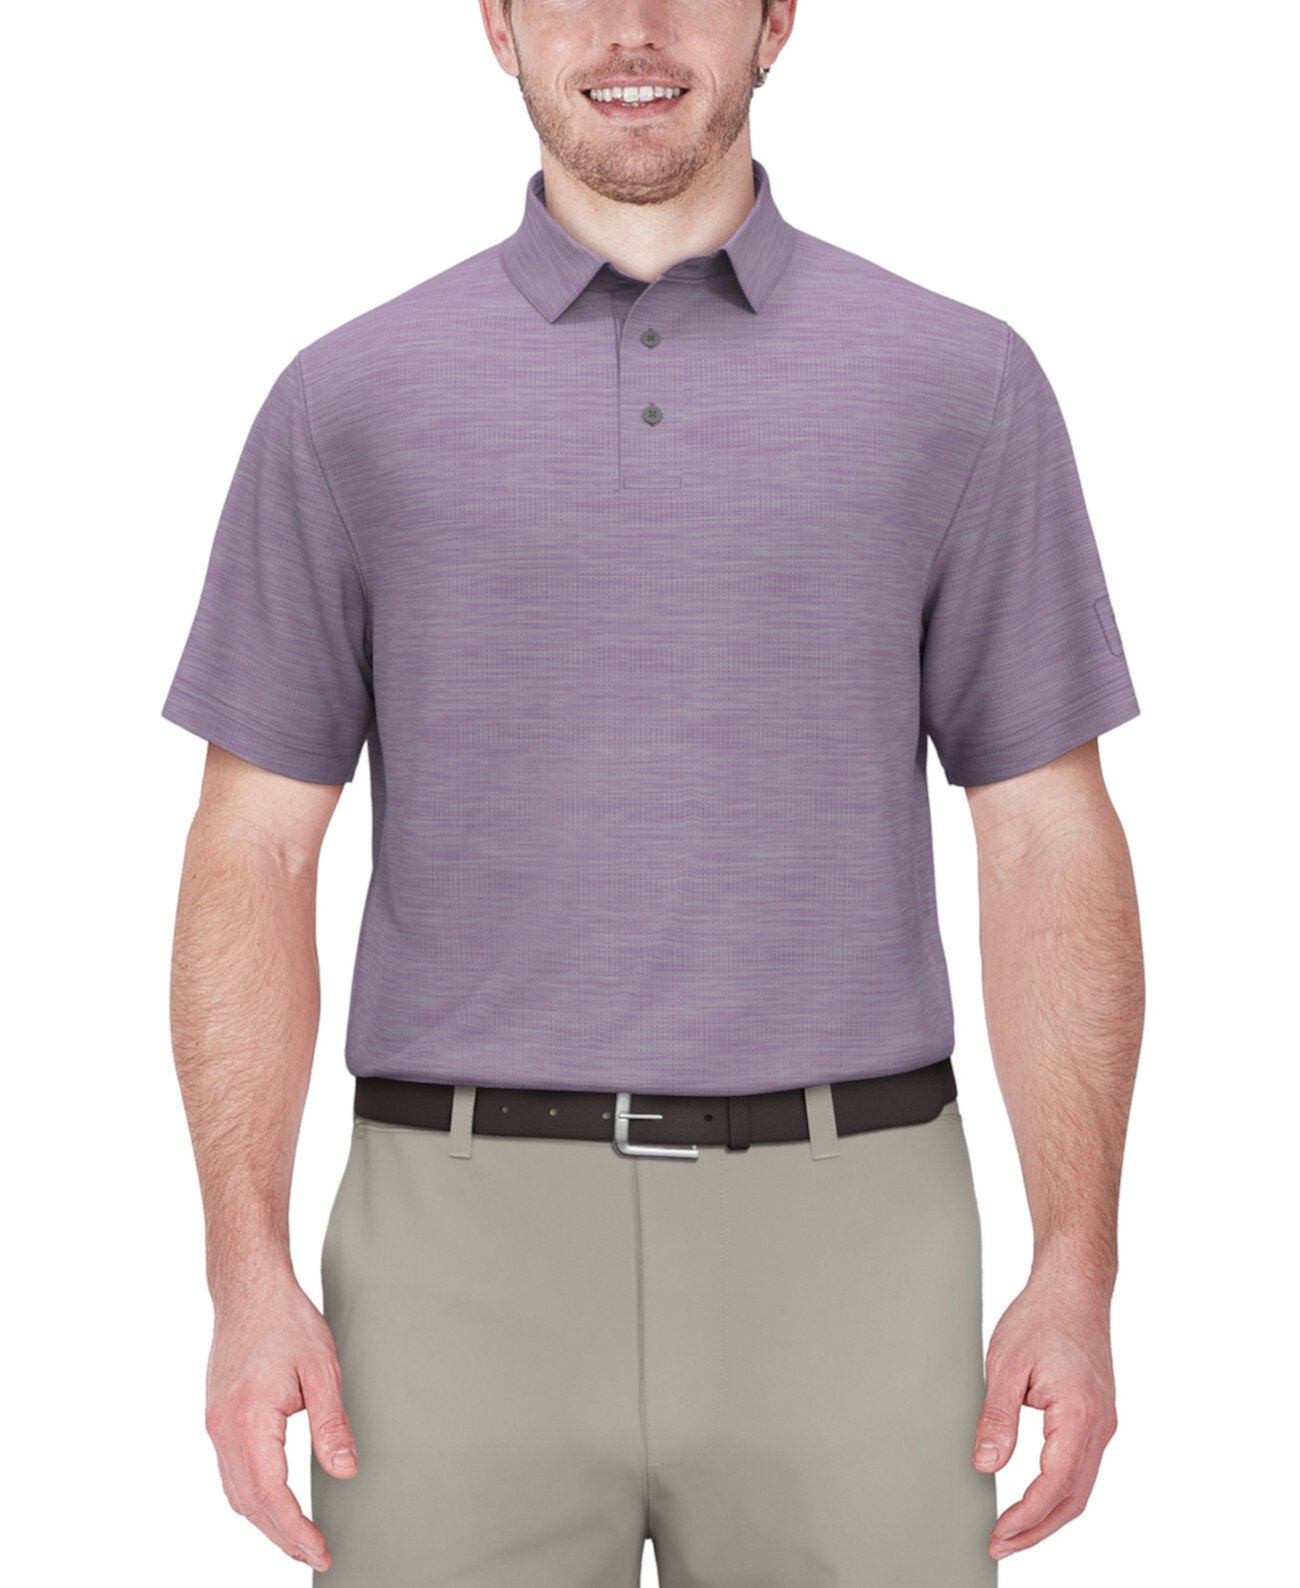 Мужская рубашка-поло для гольфа Airflux Jaspe PGA TOUR